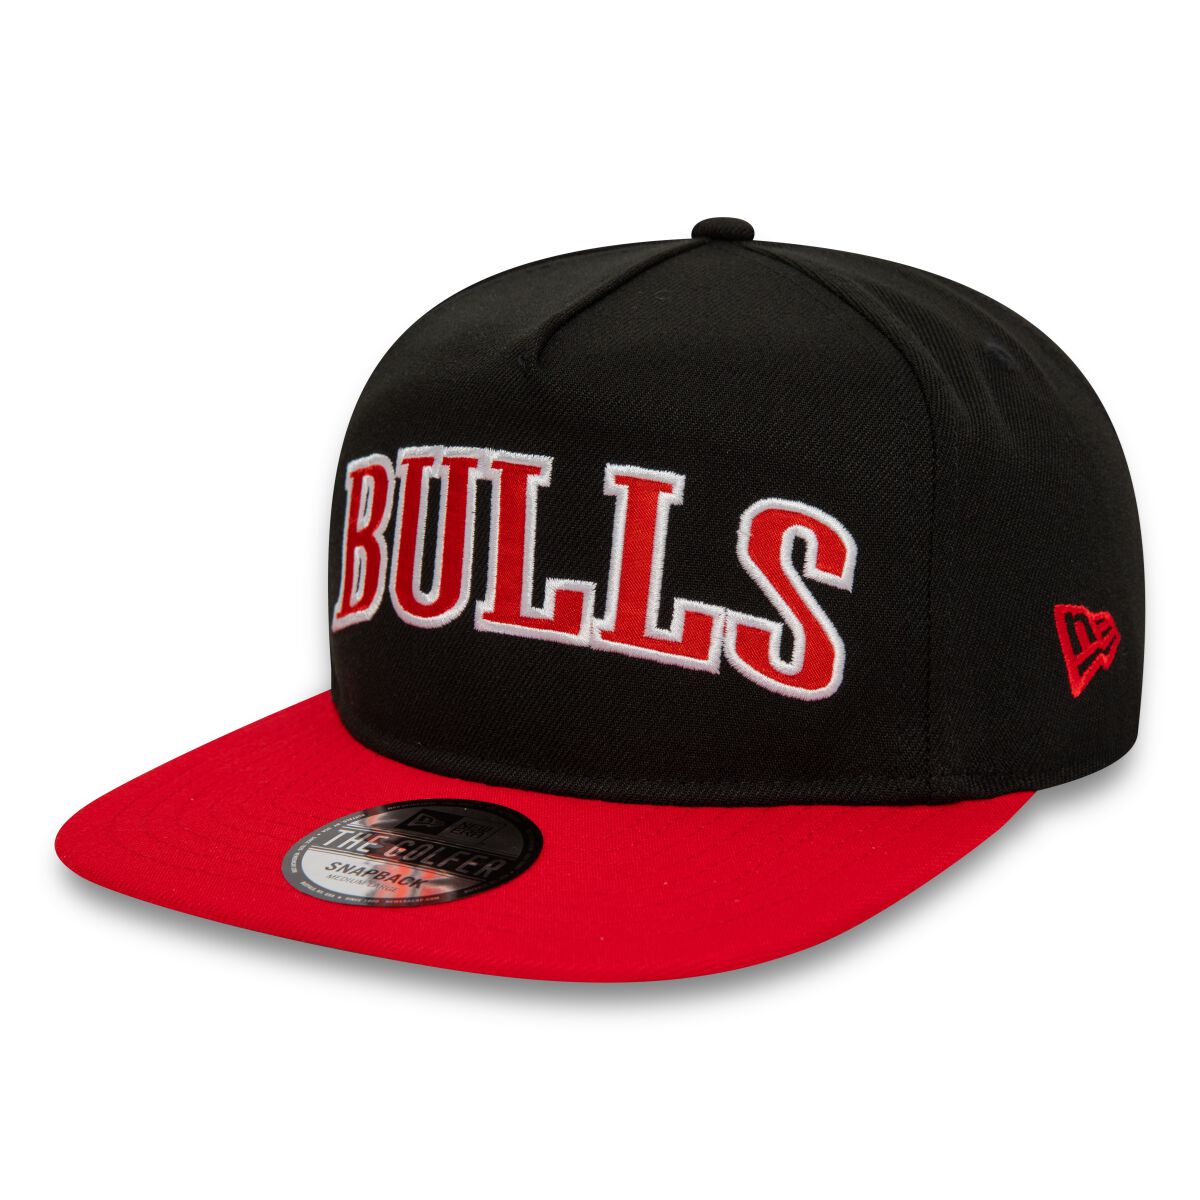 New Era - NBA NBA Golfer - Chicago Bulls Cap multicolor